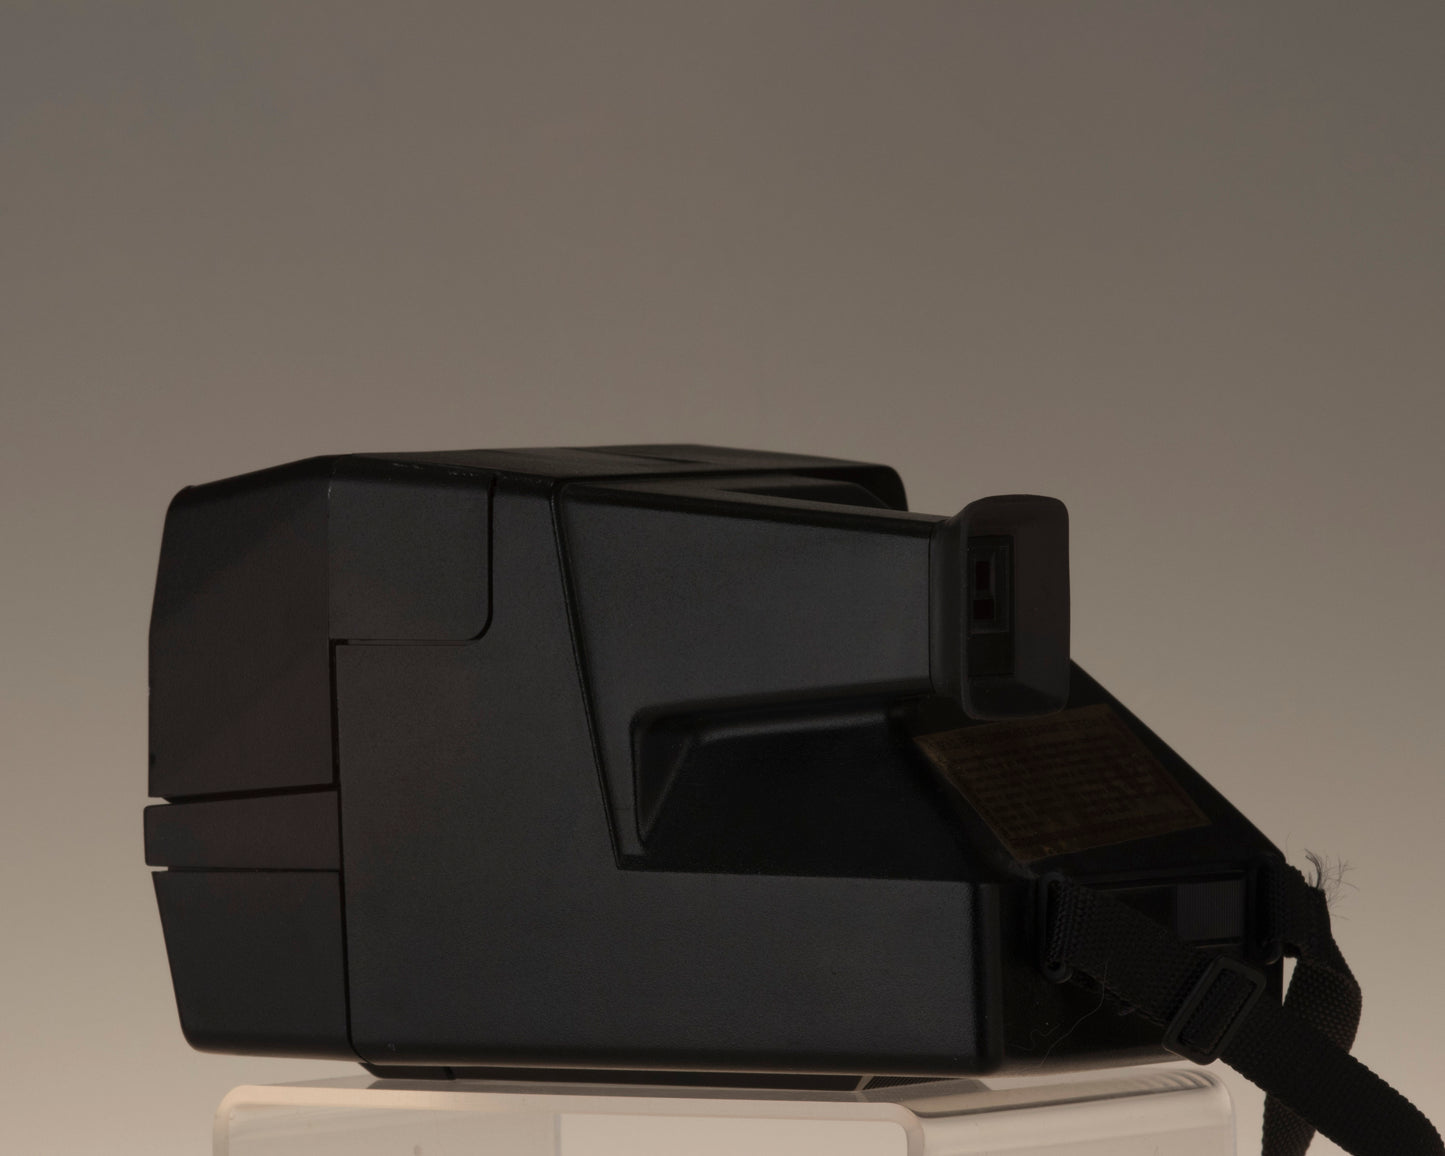 Polaroid 600 AutoFocus  Land Camera instant film camera